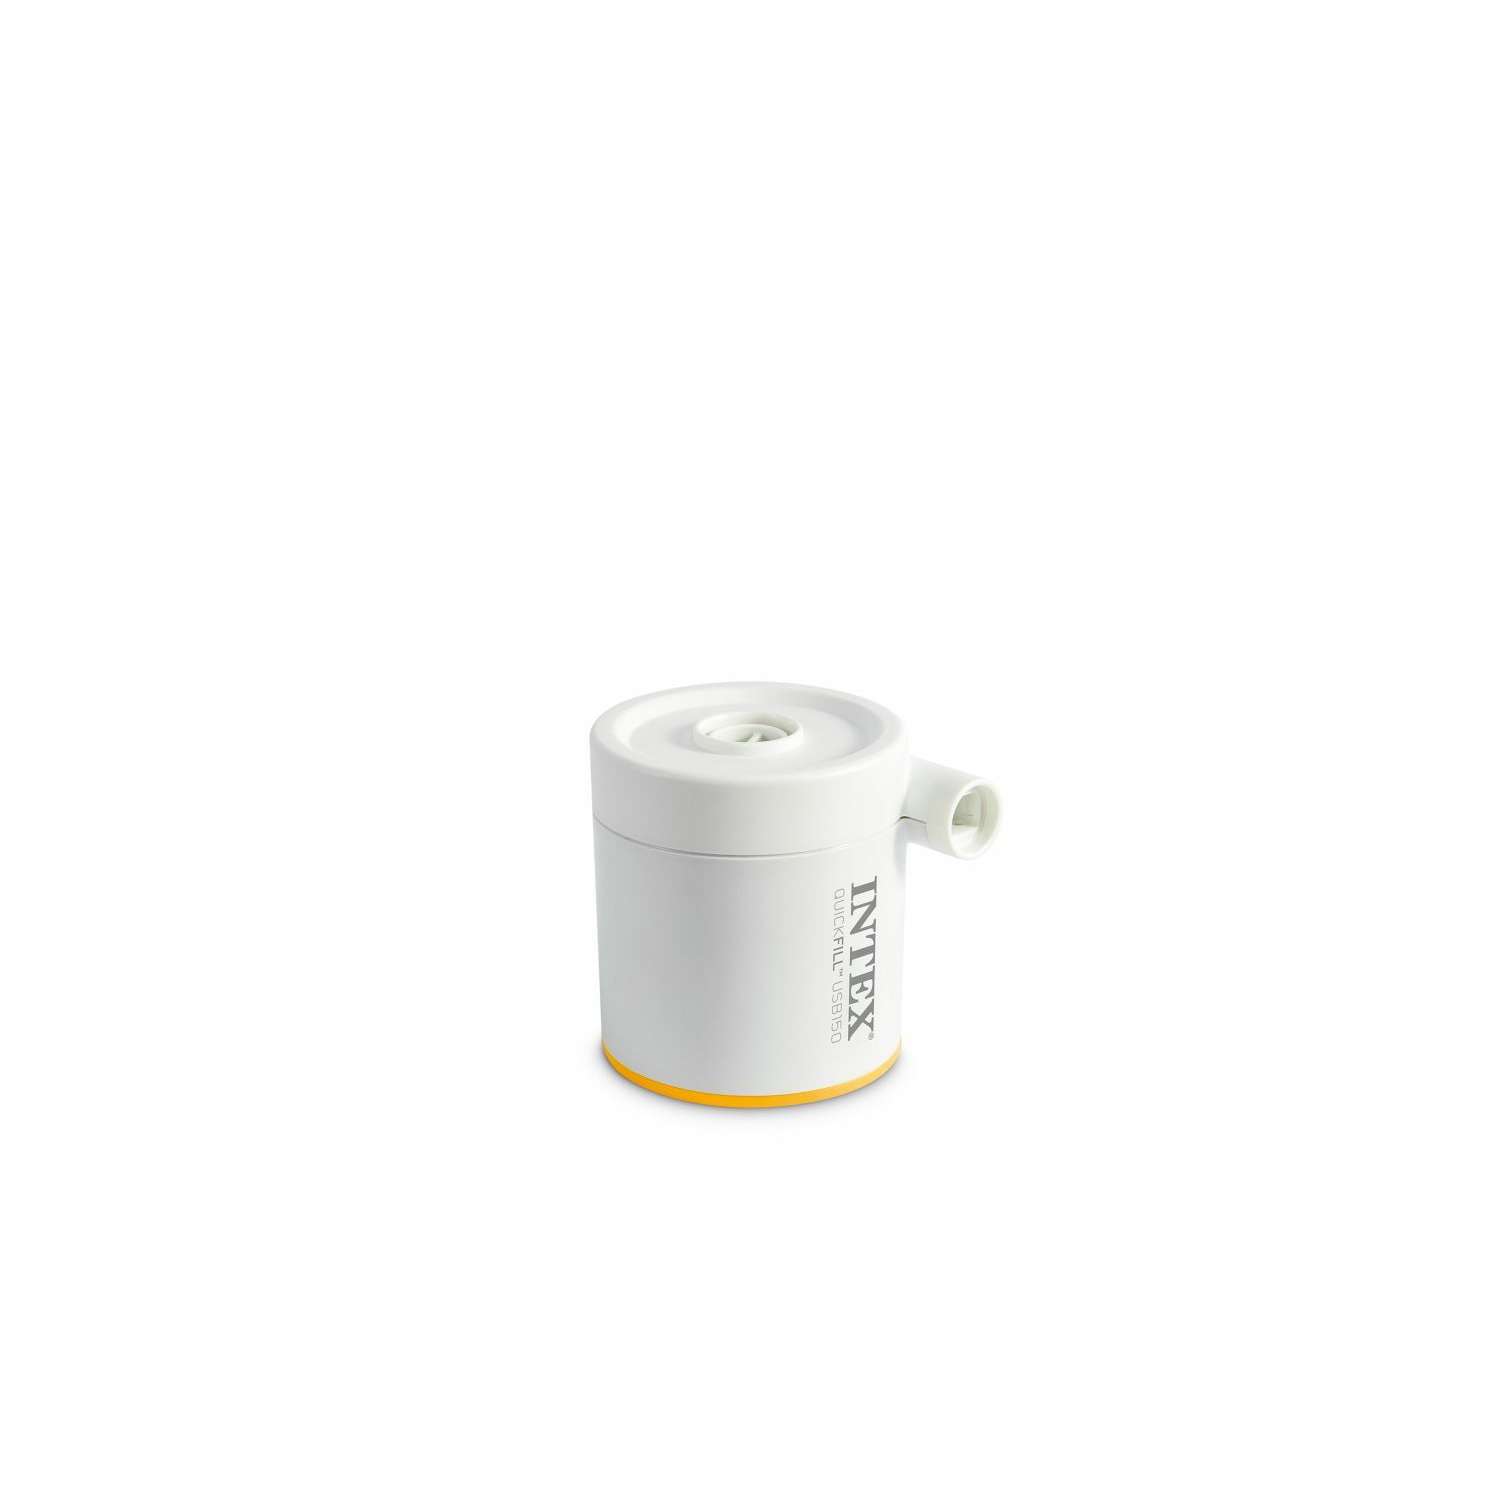 Насос электрический INTEX USB150 Air Pump 2 насадки в комплекте - фото 2